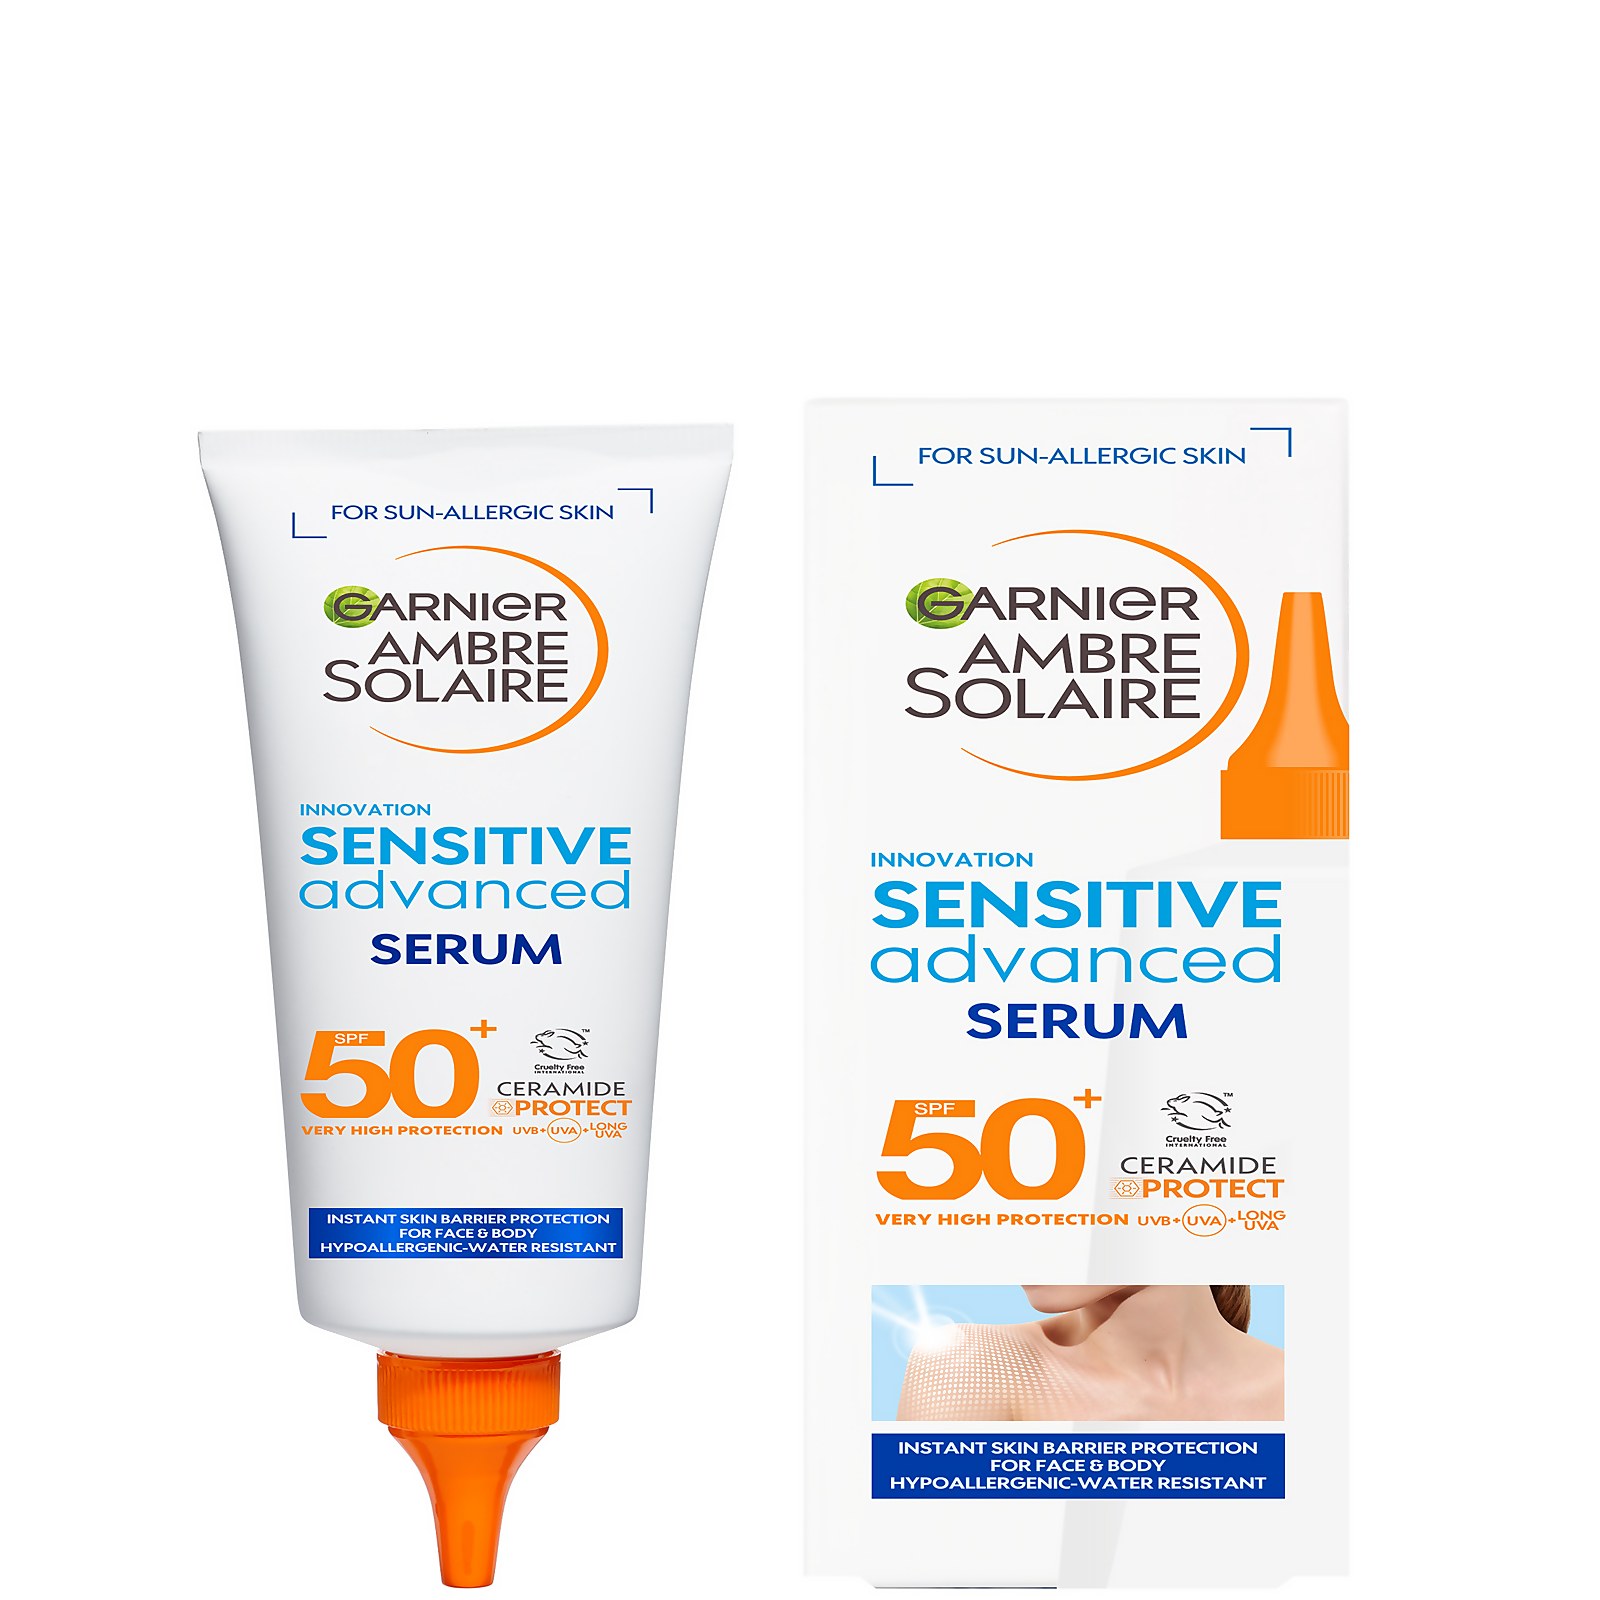 Photos - Sun Skin Care Garnier Ambre Solaire SPF 50+ Sensitive Advanced Face and Body Serum 125ml 